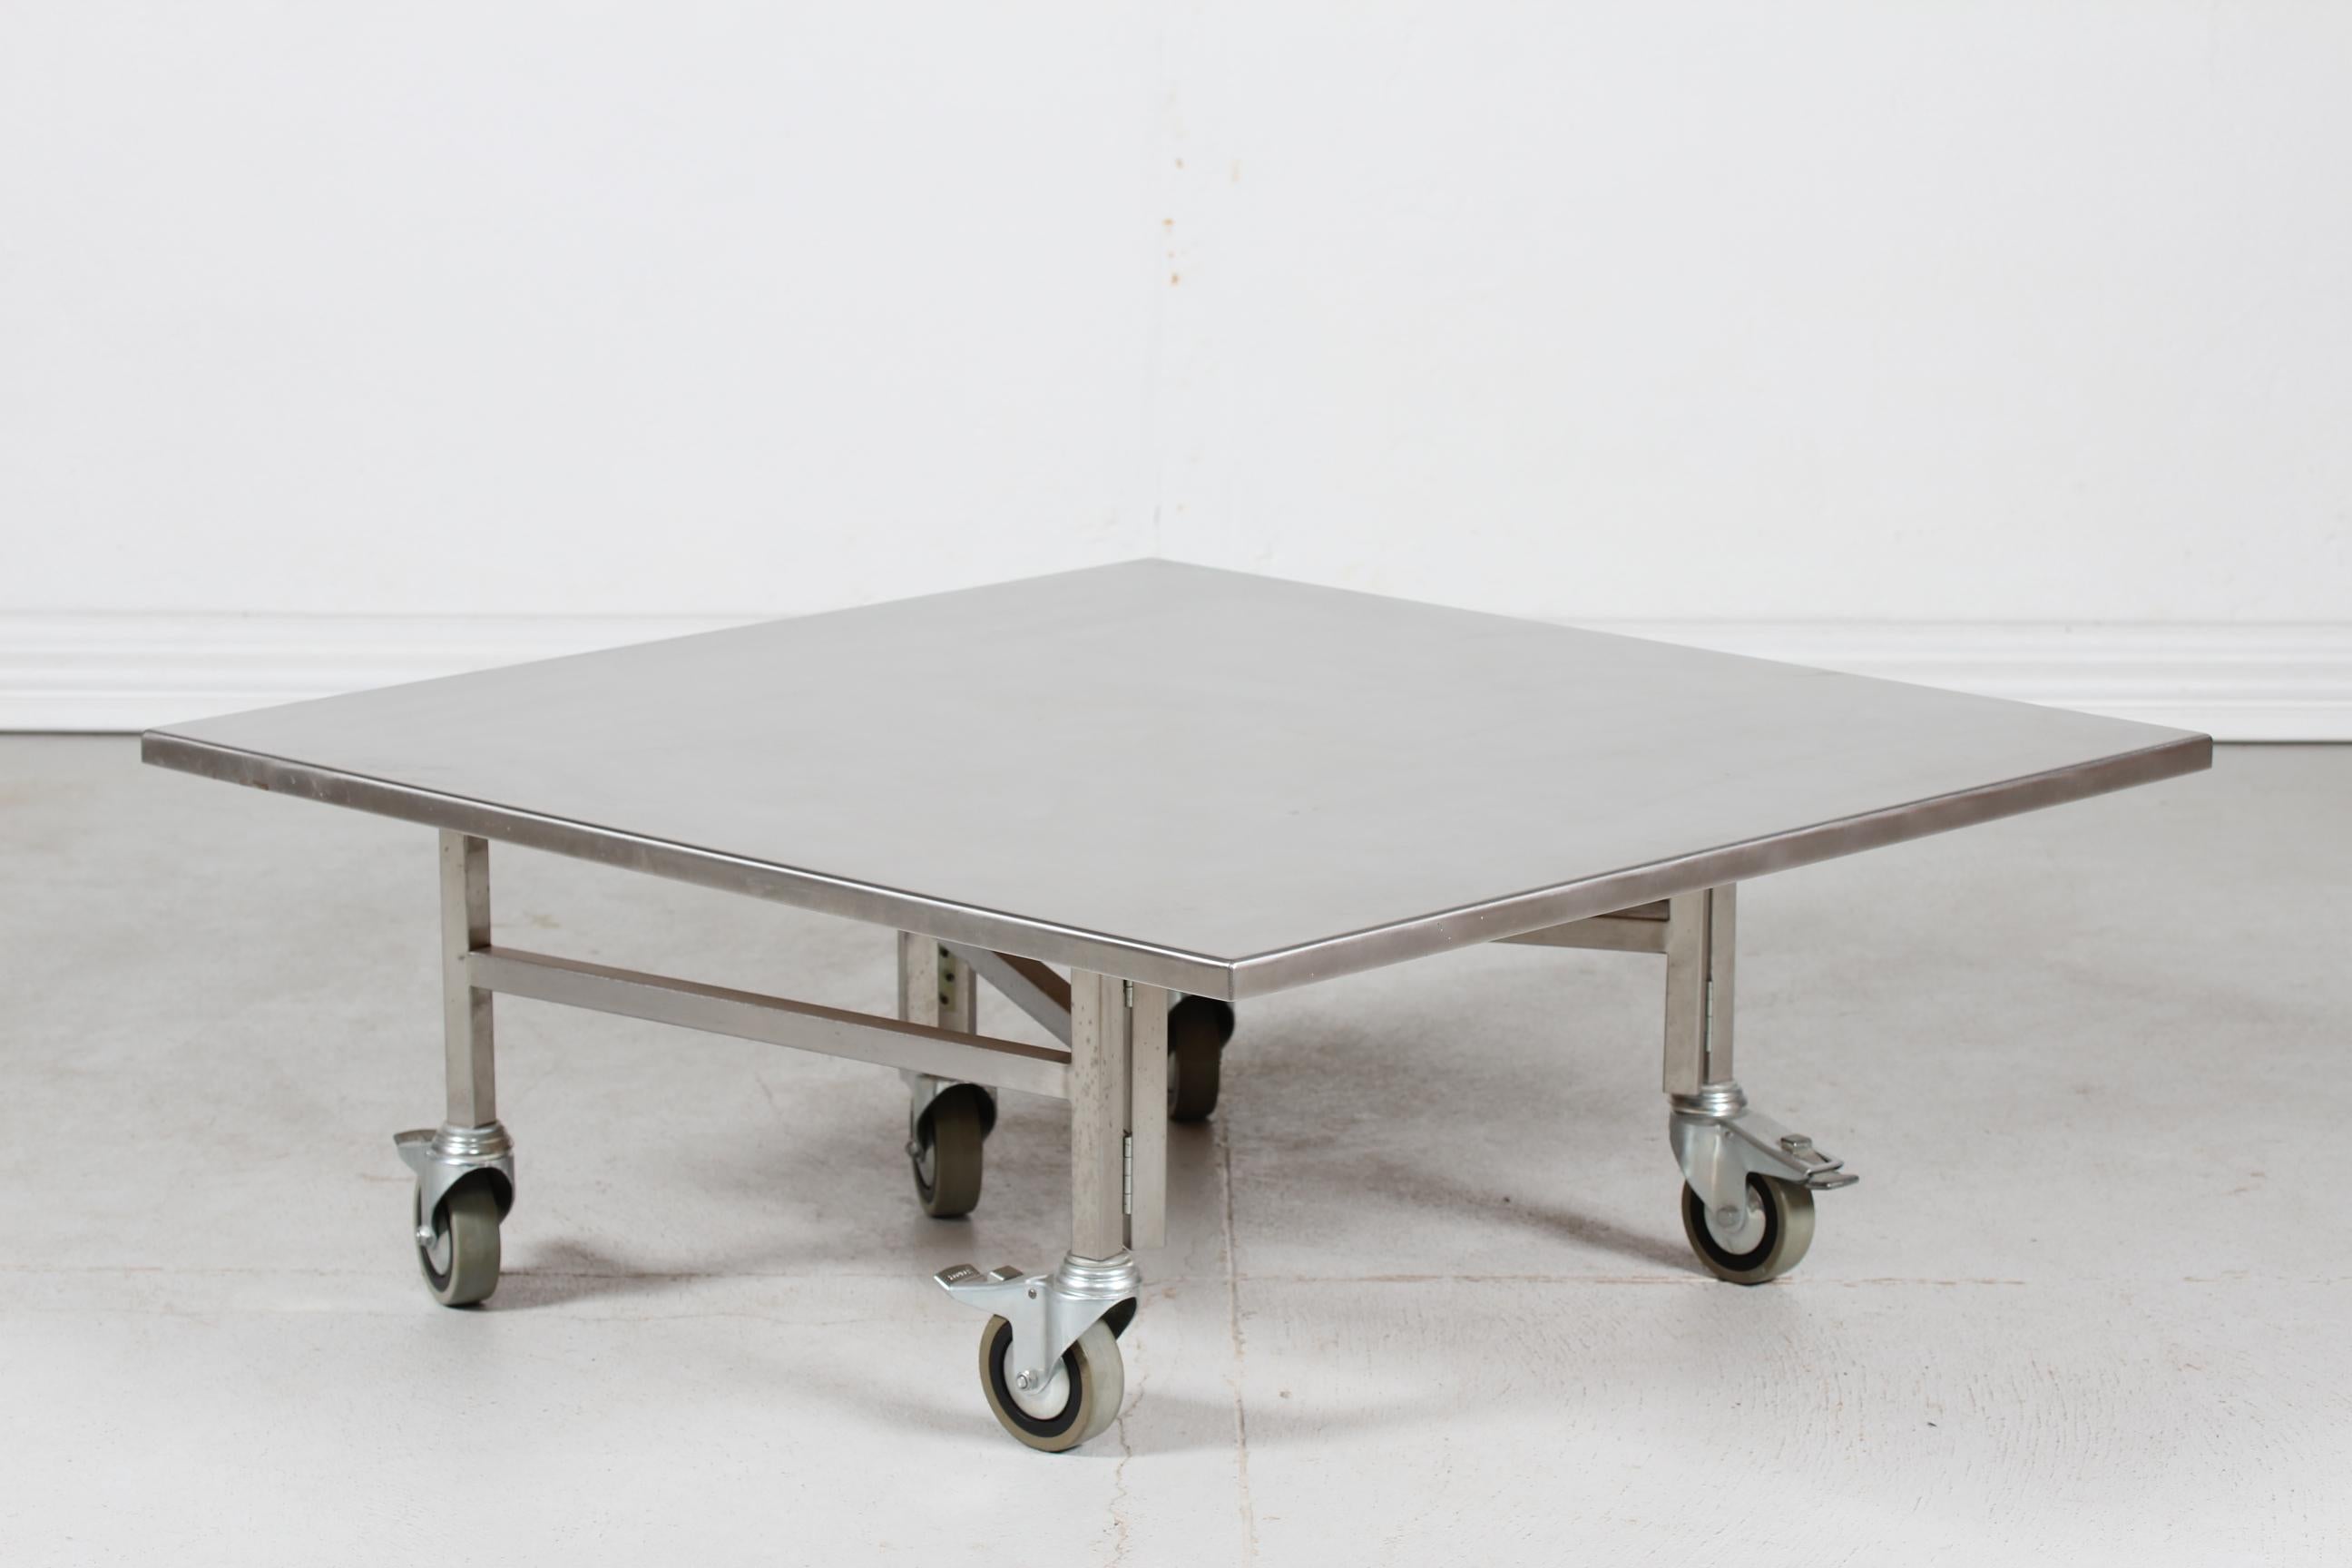 Table basse carrée danoise moderne fabriquée sur-mesure sur roulettes par un fabricant danois dans les années 1980.
La table unique est fabriquée en acier inoxydable sur le plateau, avec un cadre en métal et des roues métalliques en